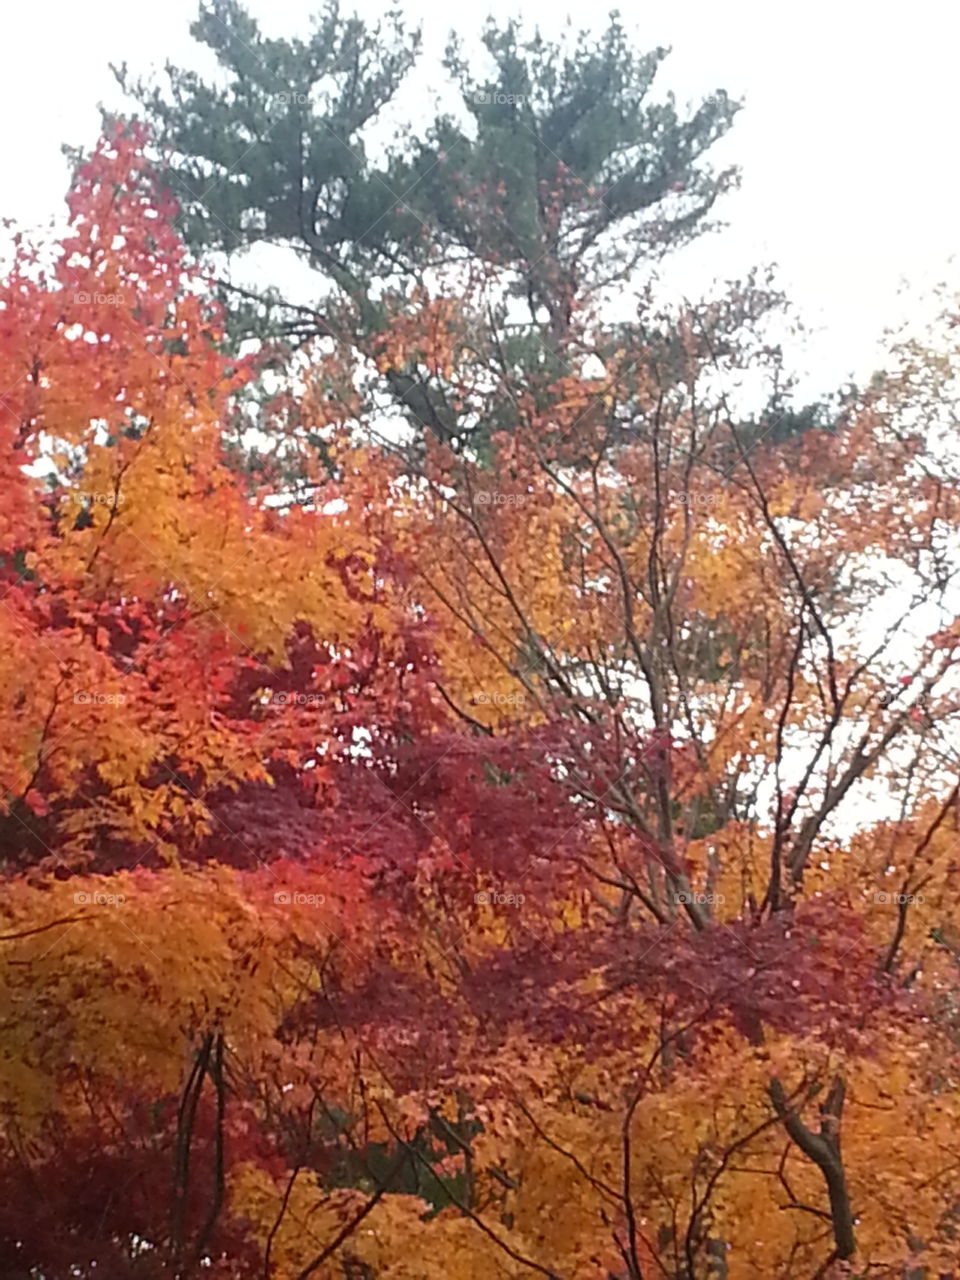 Fall, Tree, Leaf, Season, Nature